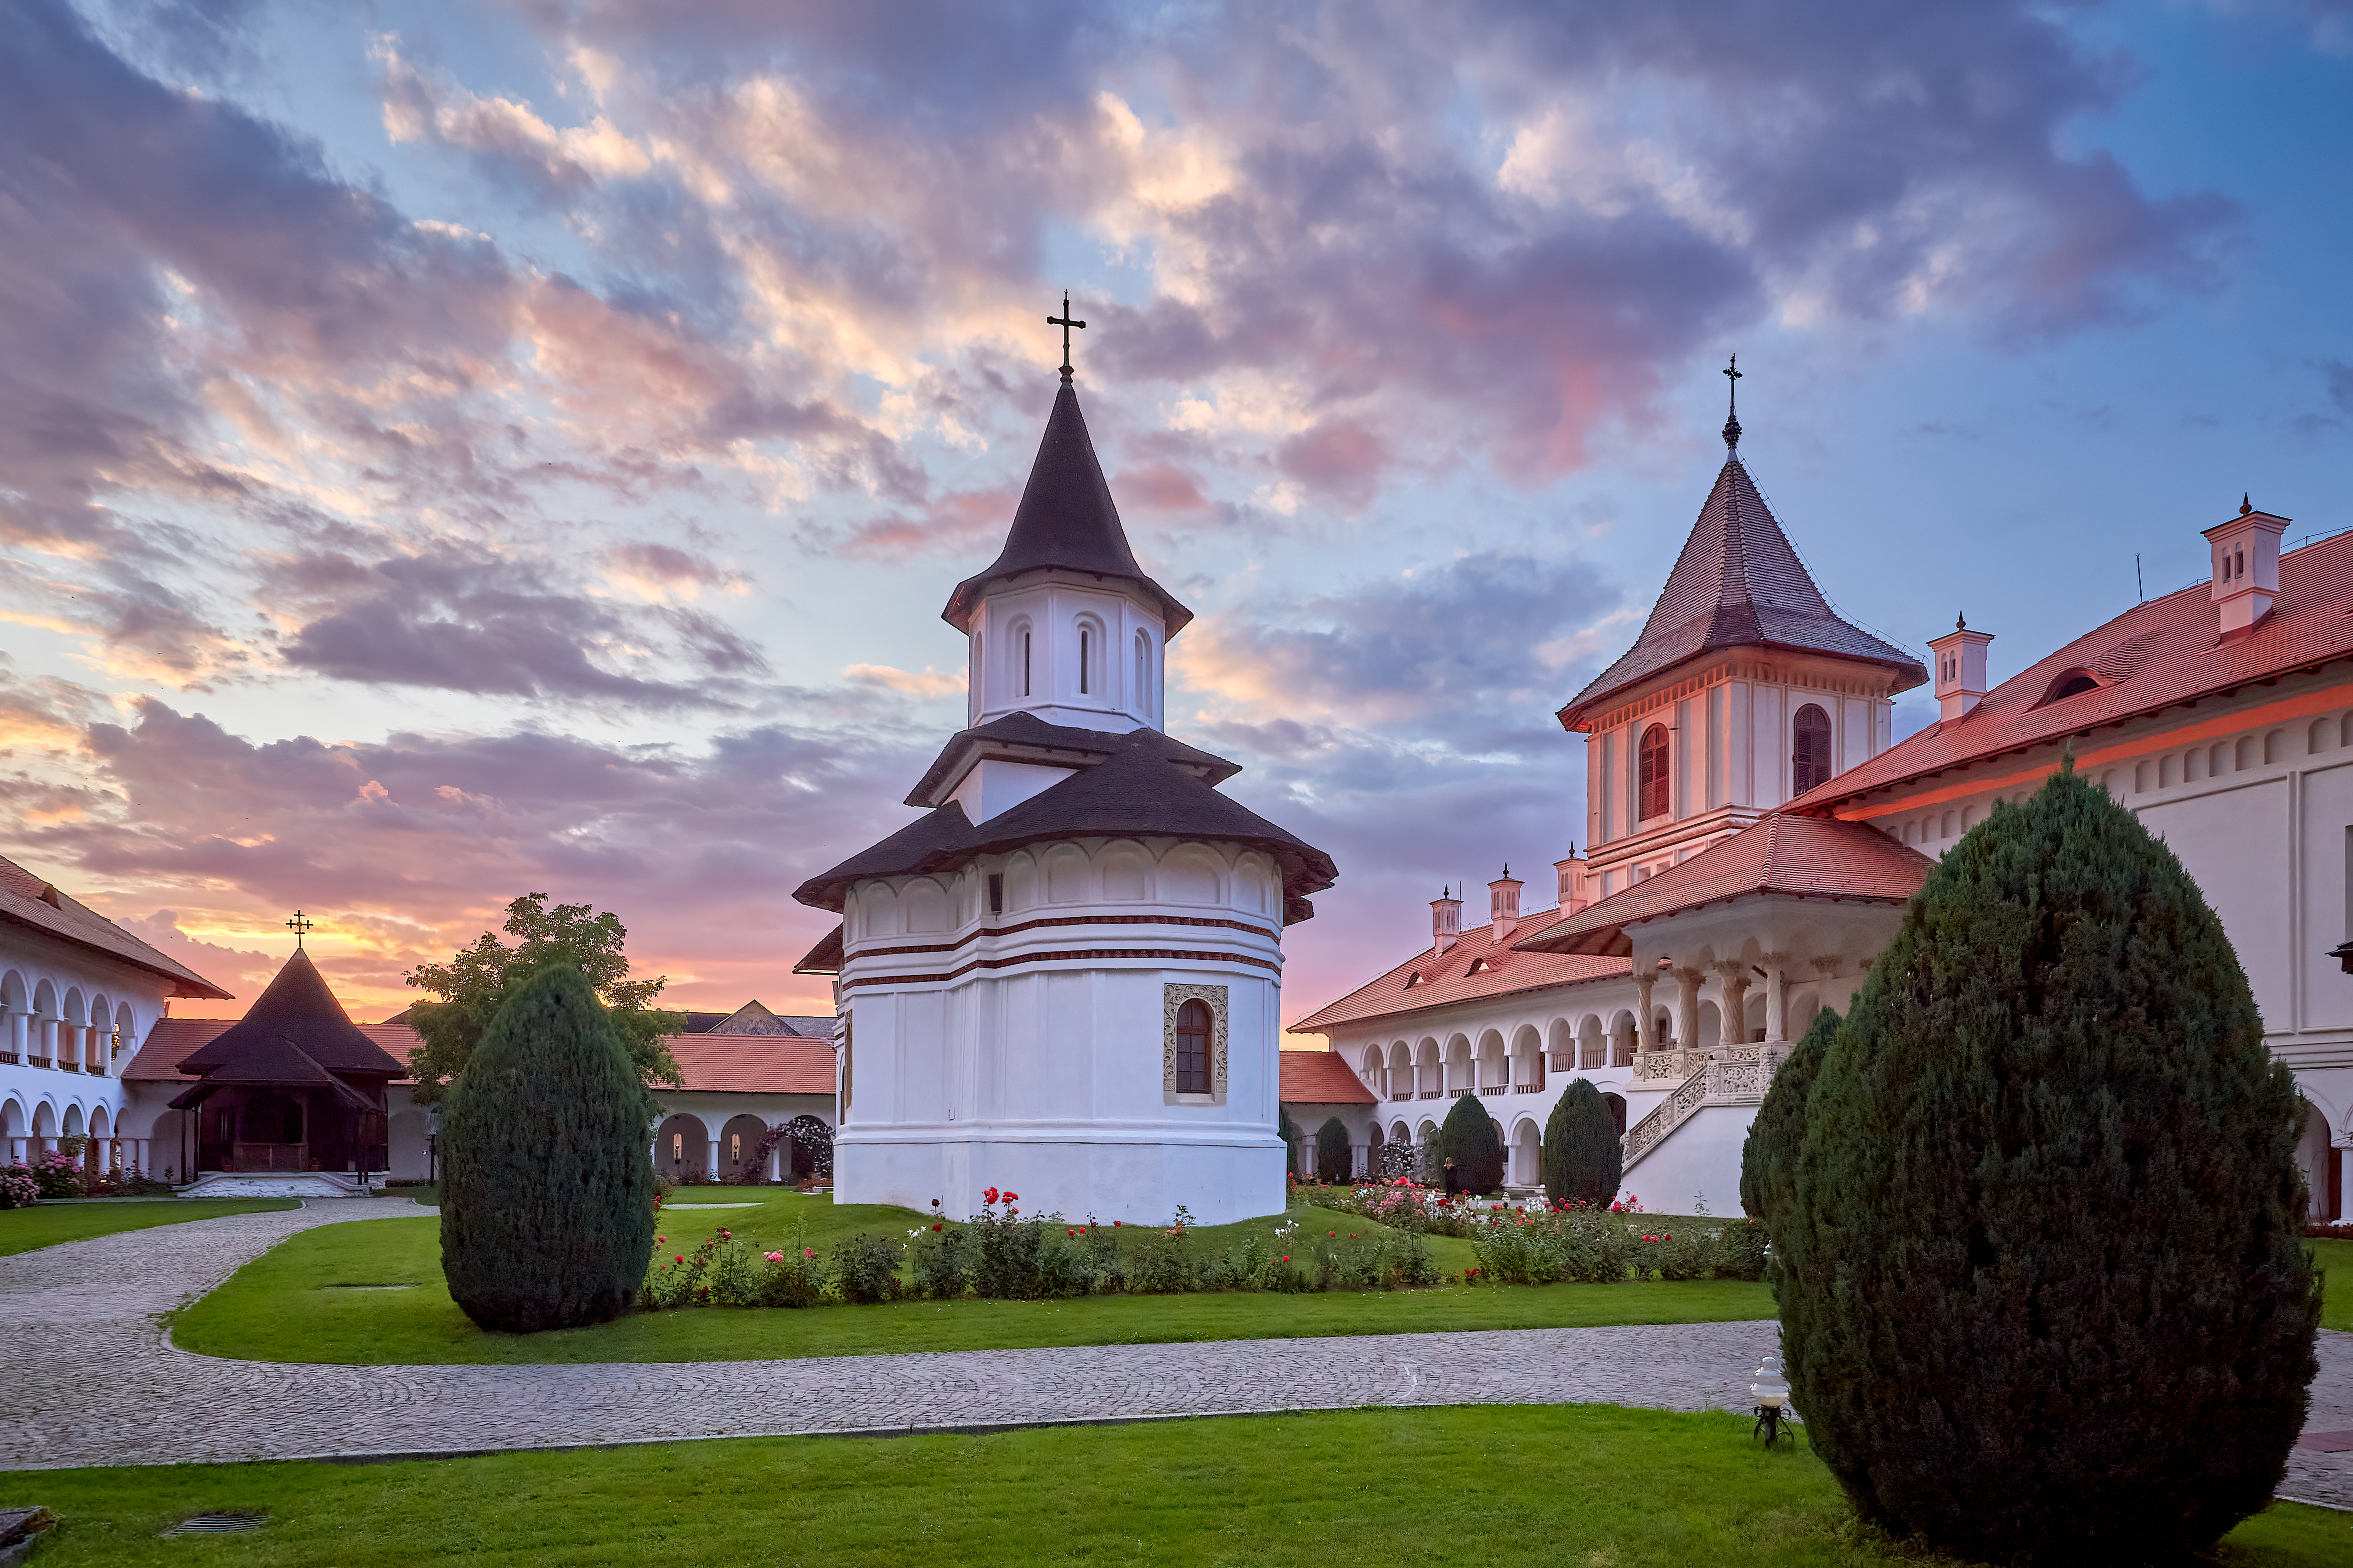 Церковь в Румынии, где иностранцы могут получить ВНЖ